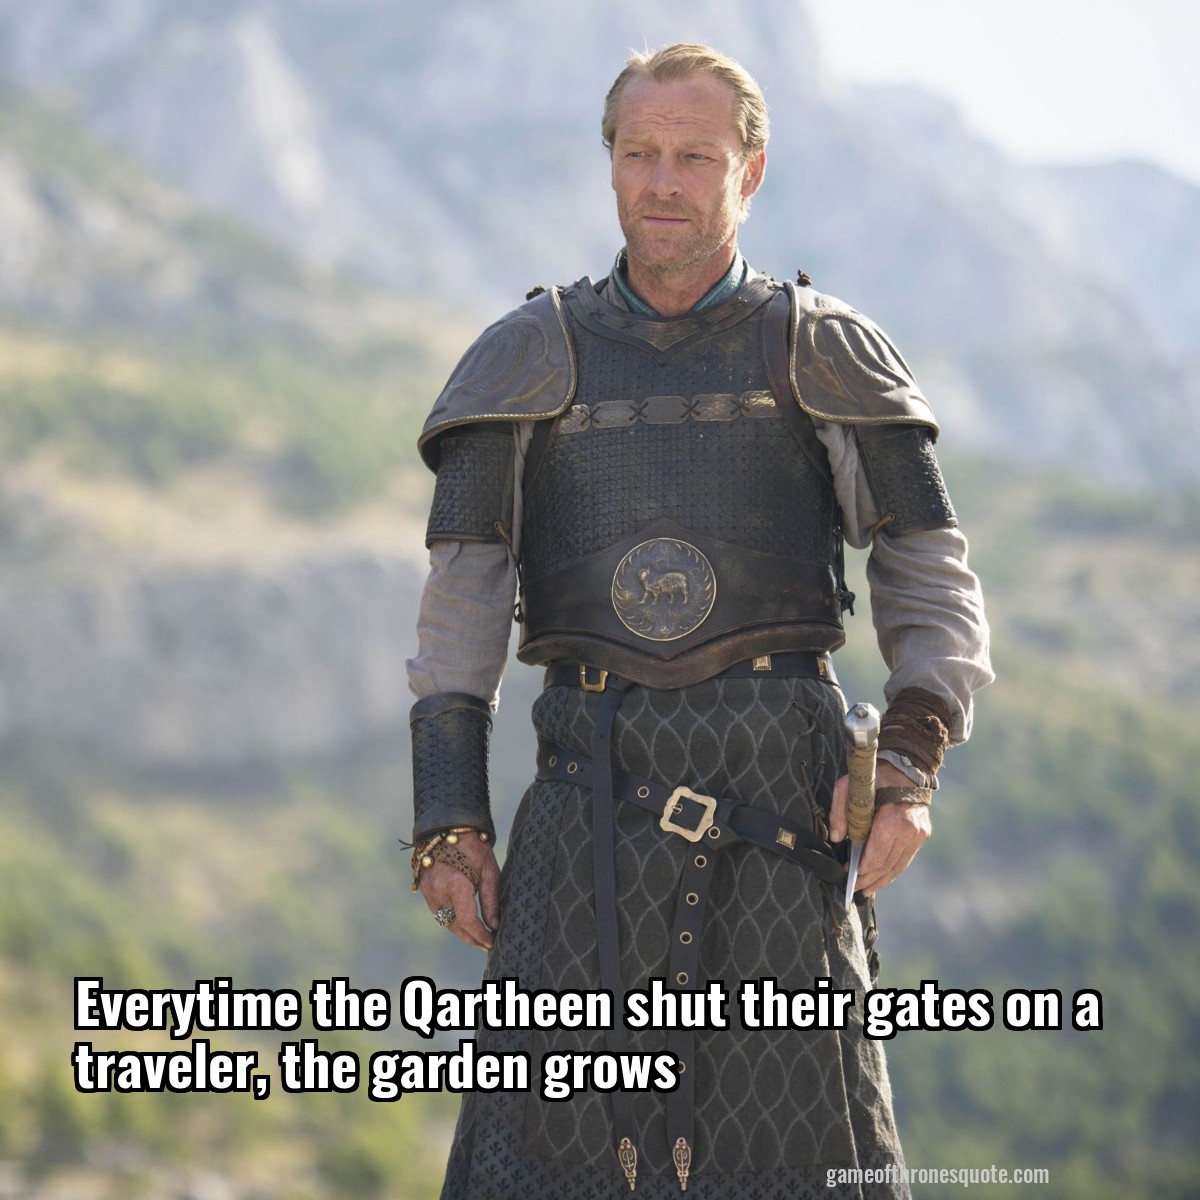 Everytime the Qartheen shut their gates on a traveler, the garden grows